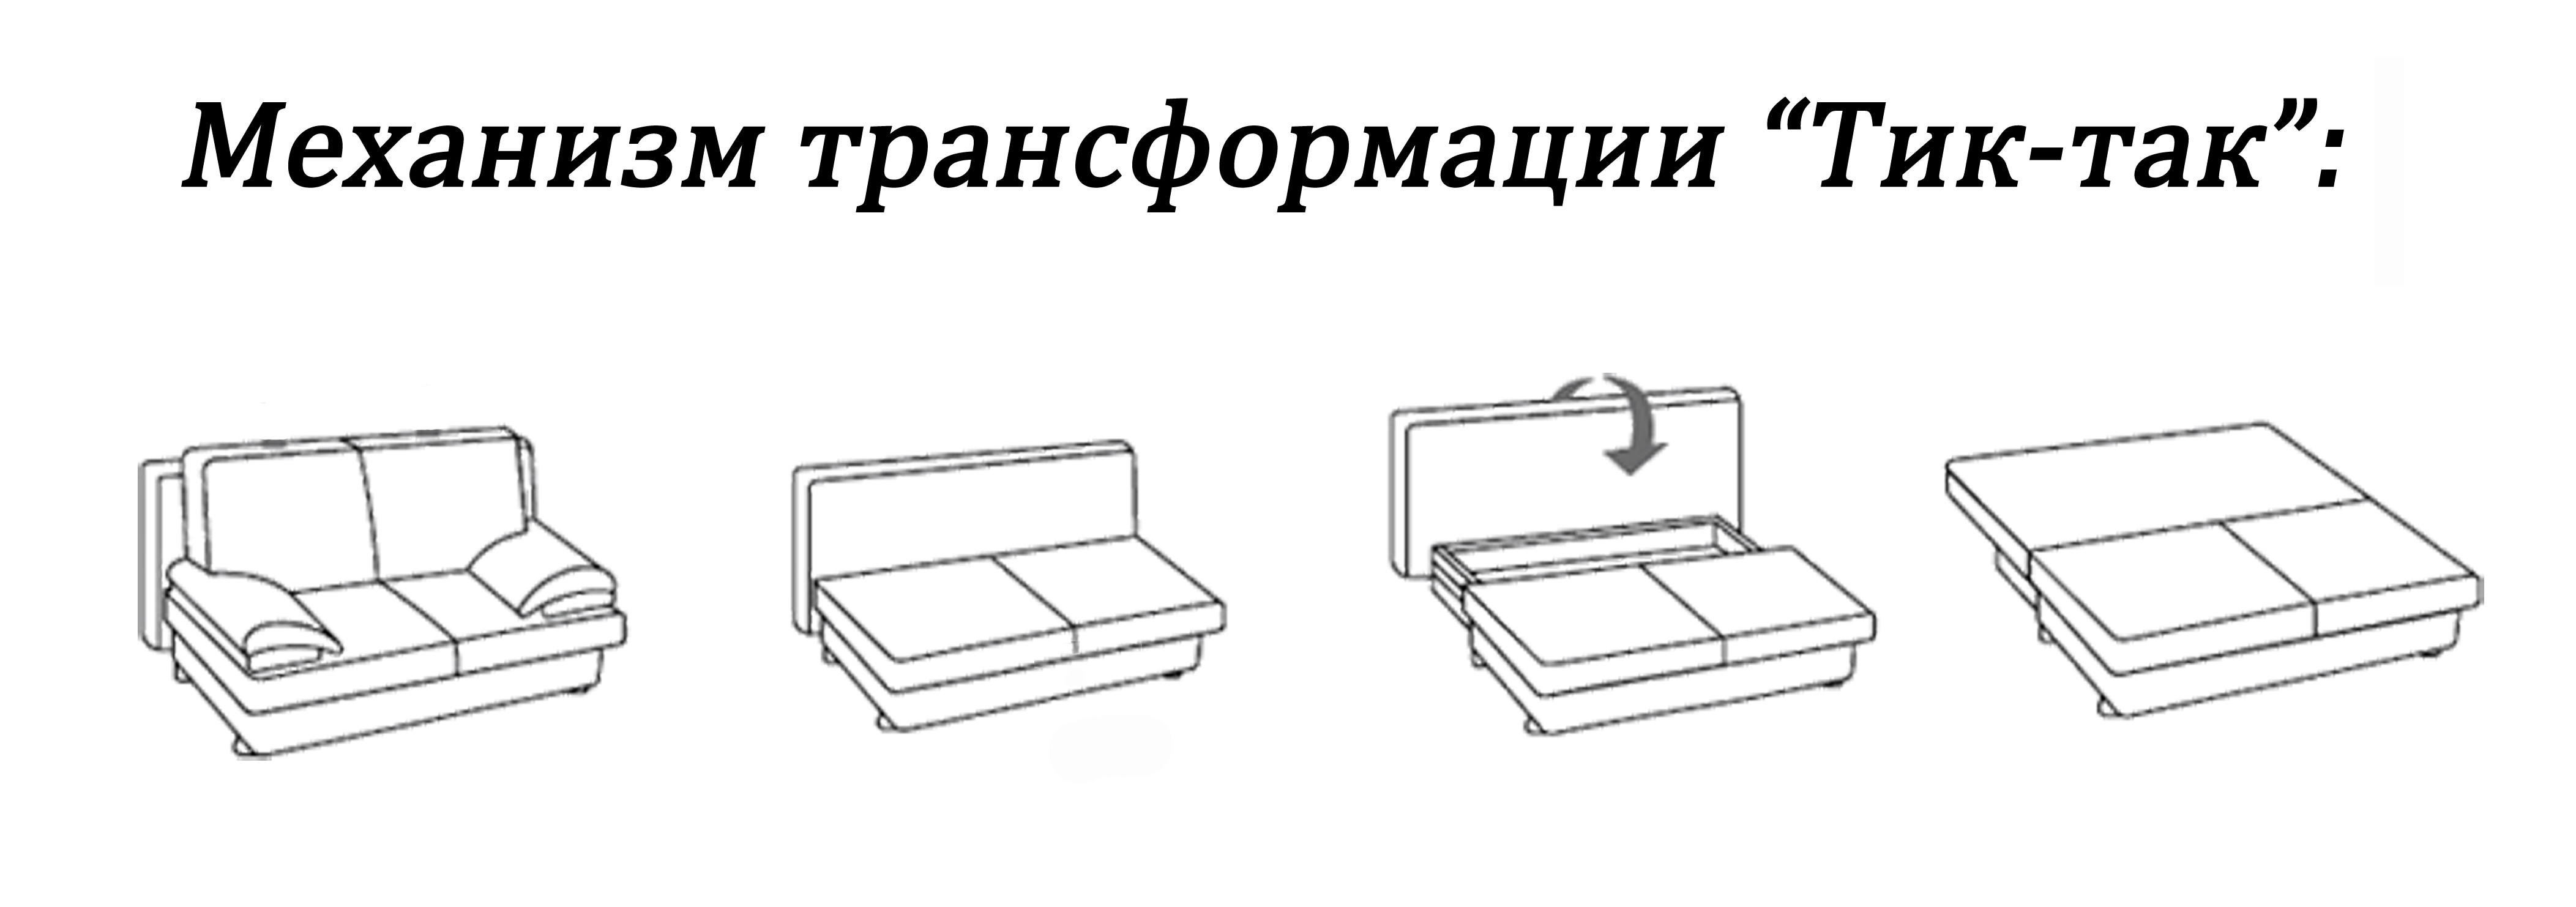 Схема механизма Тик -Так для трансформации дивана в спальное место